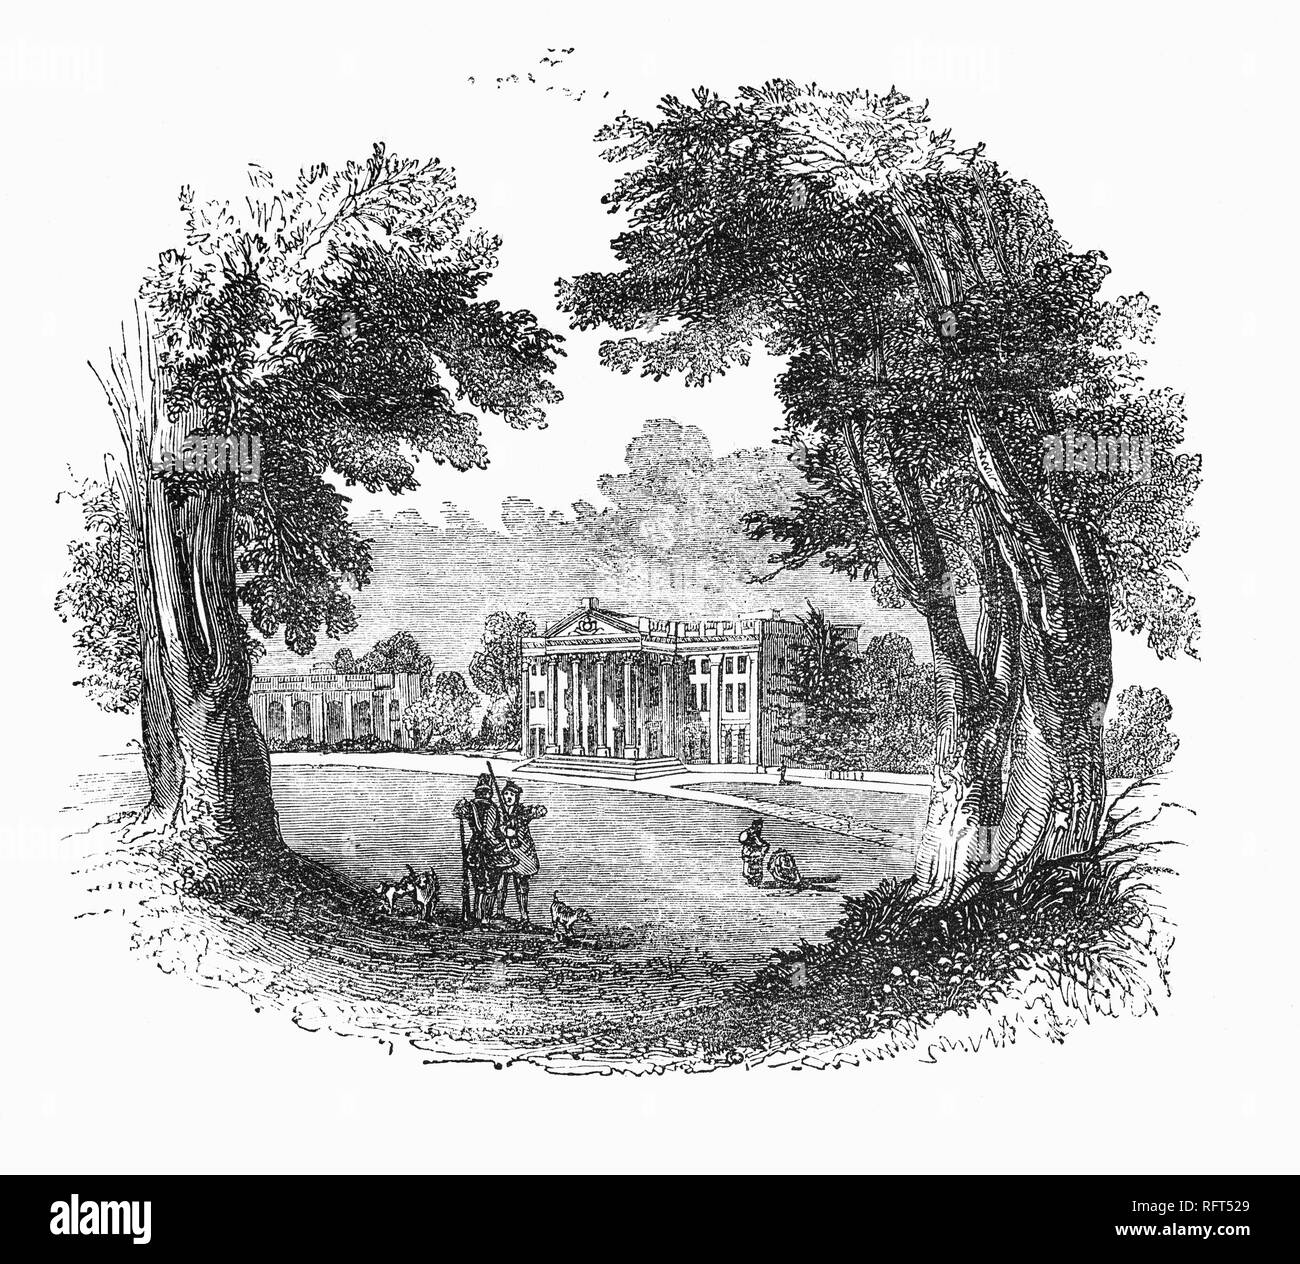 Moor Park es una mansión palaciega en varios cientos de acres de parques en el sudeste de Rickmansworth en Hertfordshire, Inglaterra. La casa fue reconstruida en 1678-1679 por James Scott, primer duque de Monmouth y posteriormente vendidos a Benjamin Haskins-Stiles, quien había hecho una fortuna en los Mares del Sur, la famosa compañía antes del estallido de la burbuja. Los estilos de la casa había recuperado con piedra de Portland y agregó un gran pórtico corintio sobre el frente sur. Posteriormente fue comprado por el almirante Lord Anson, quien encargó Capability Brown para rehacer los jardines formales en amplias estilo 'horizontal' con un pequeño lago. Foto de stock